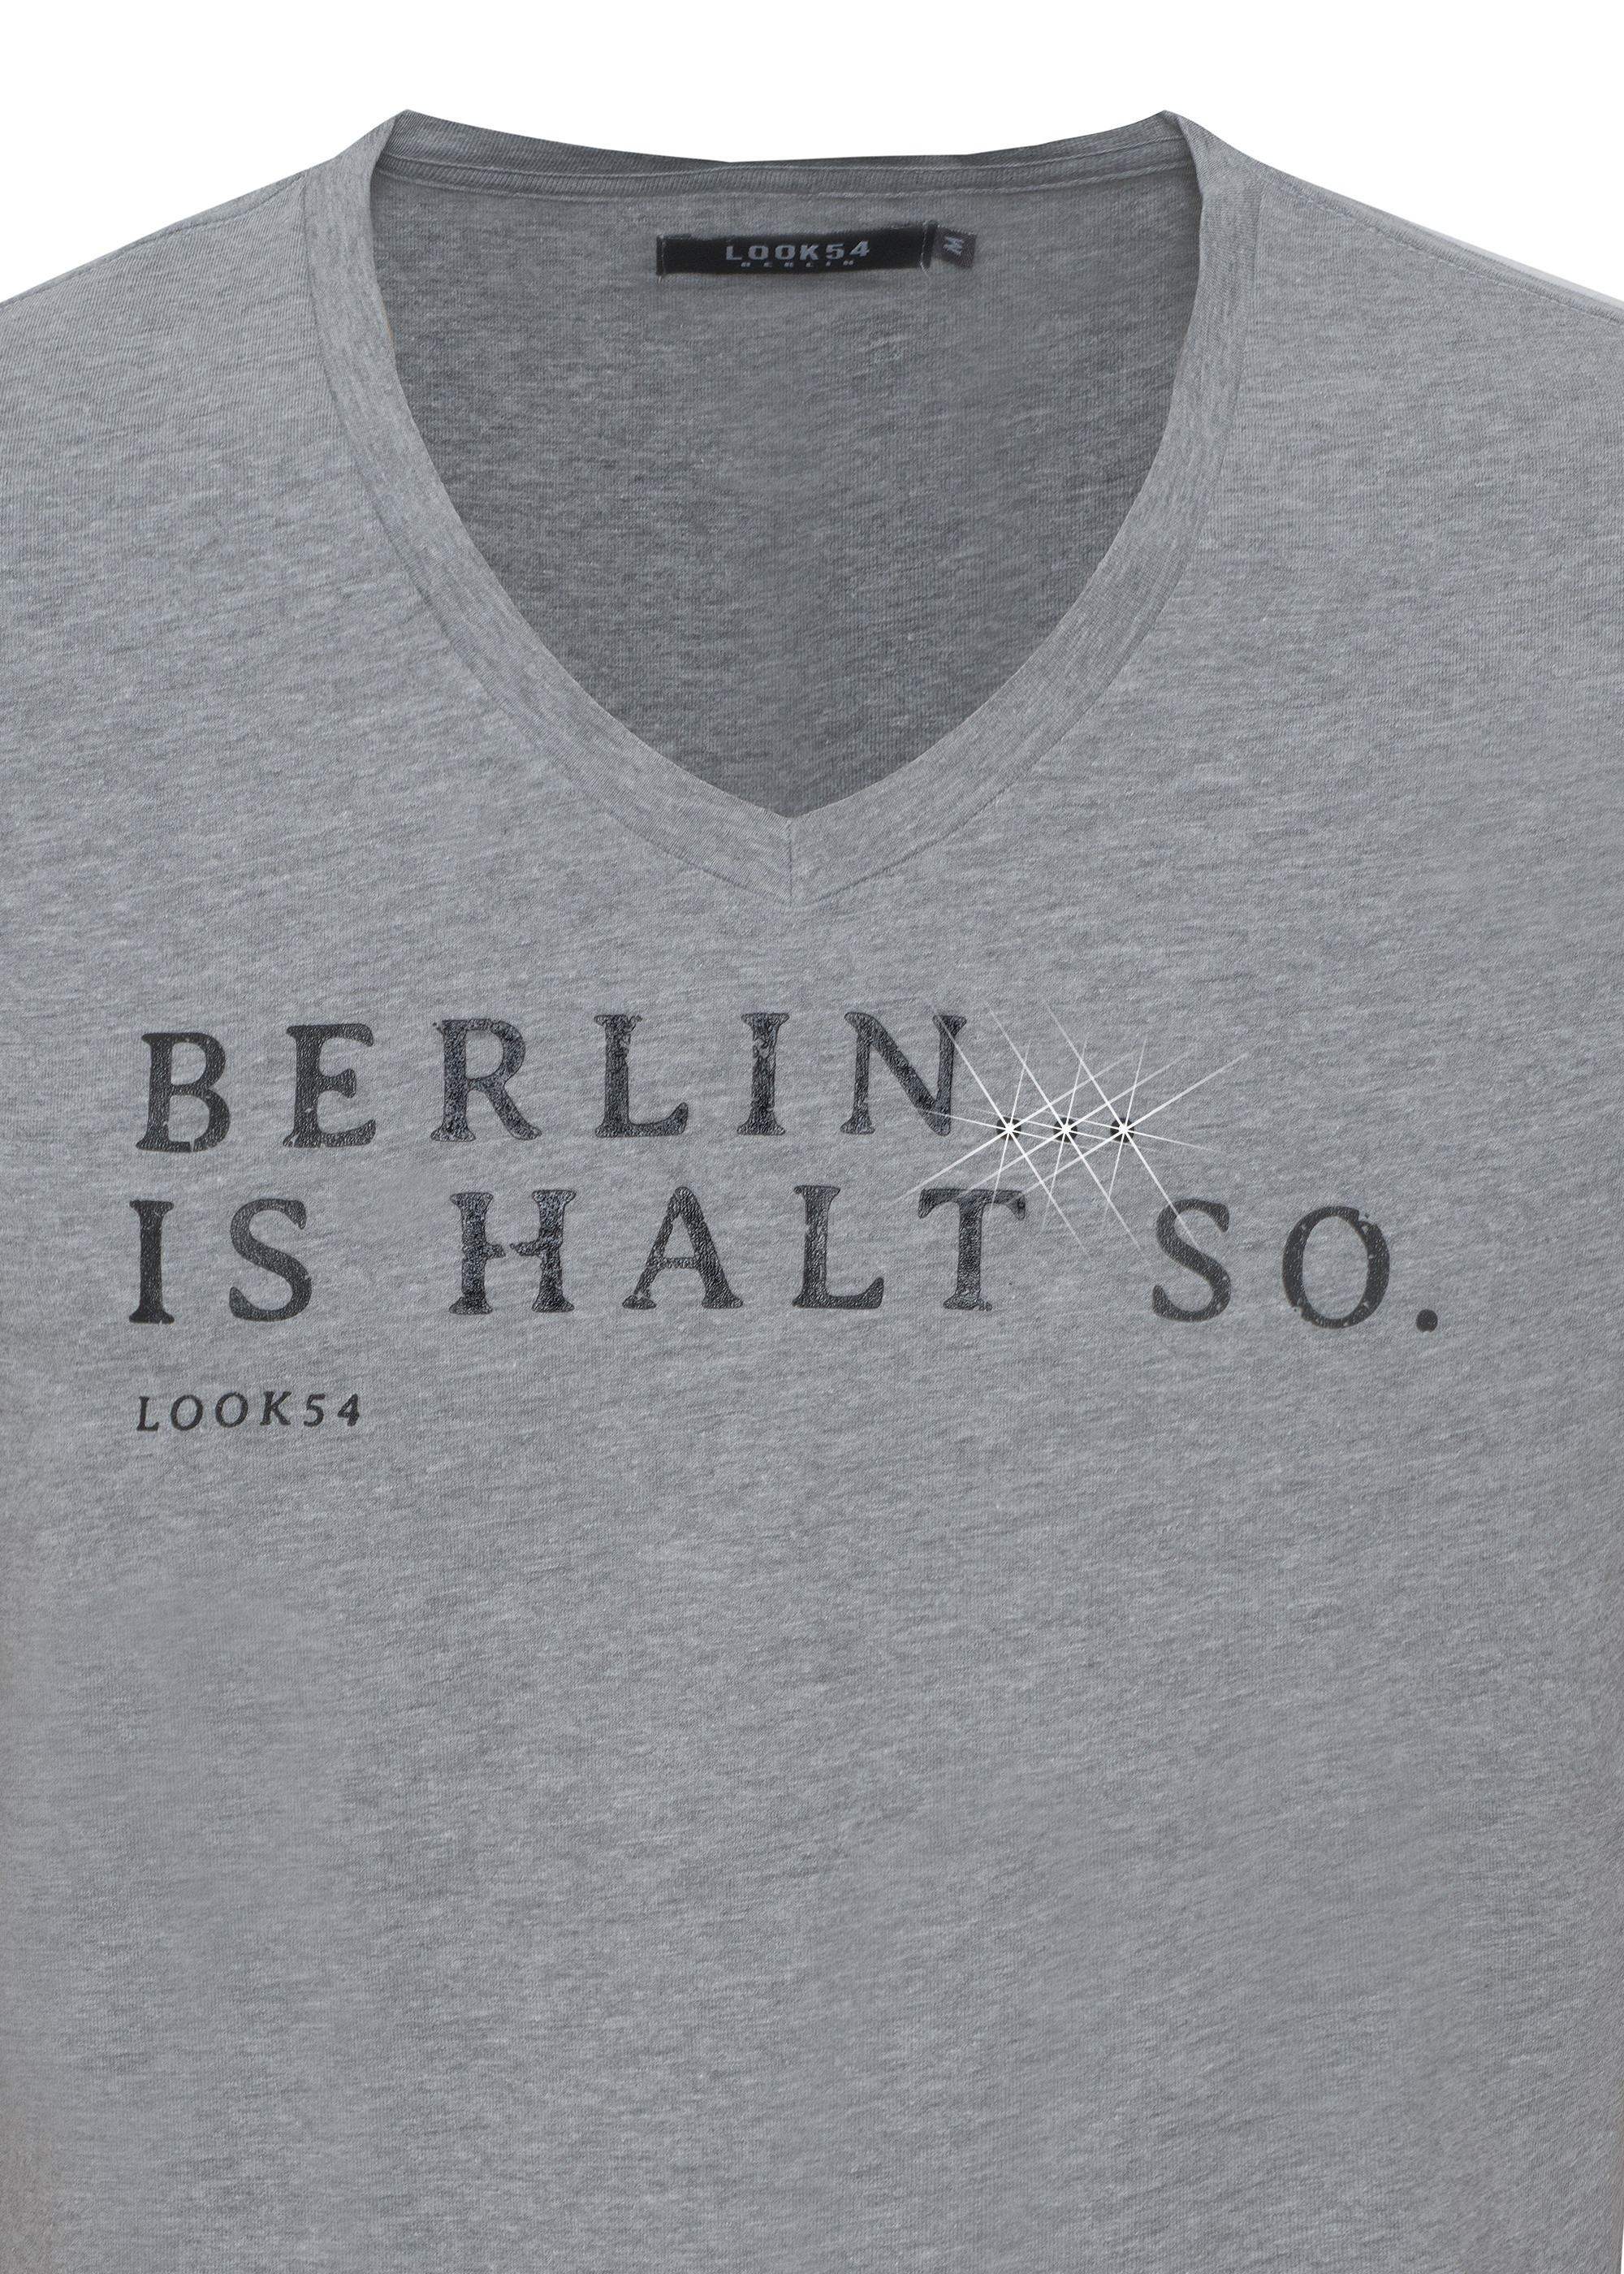 Berlin... Is halt so. V-Shirt